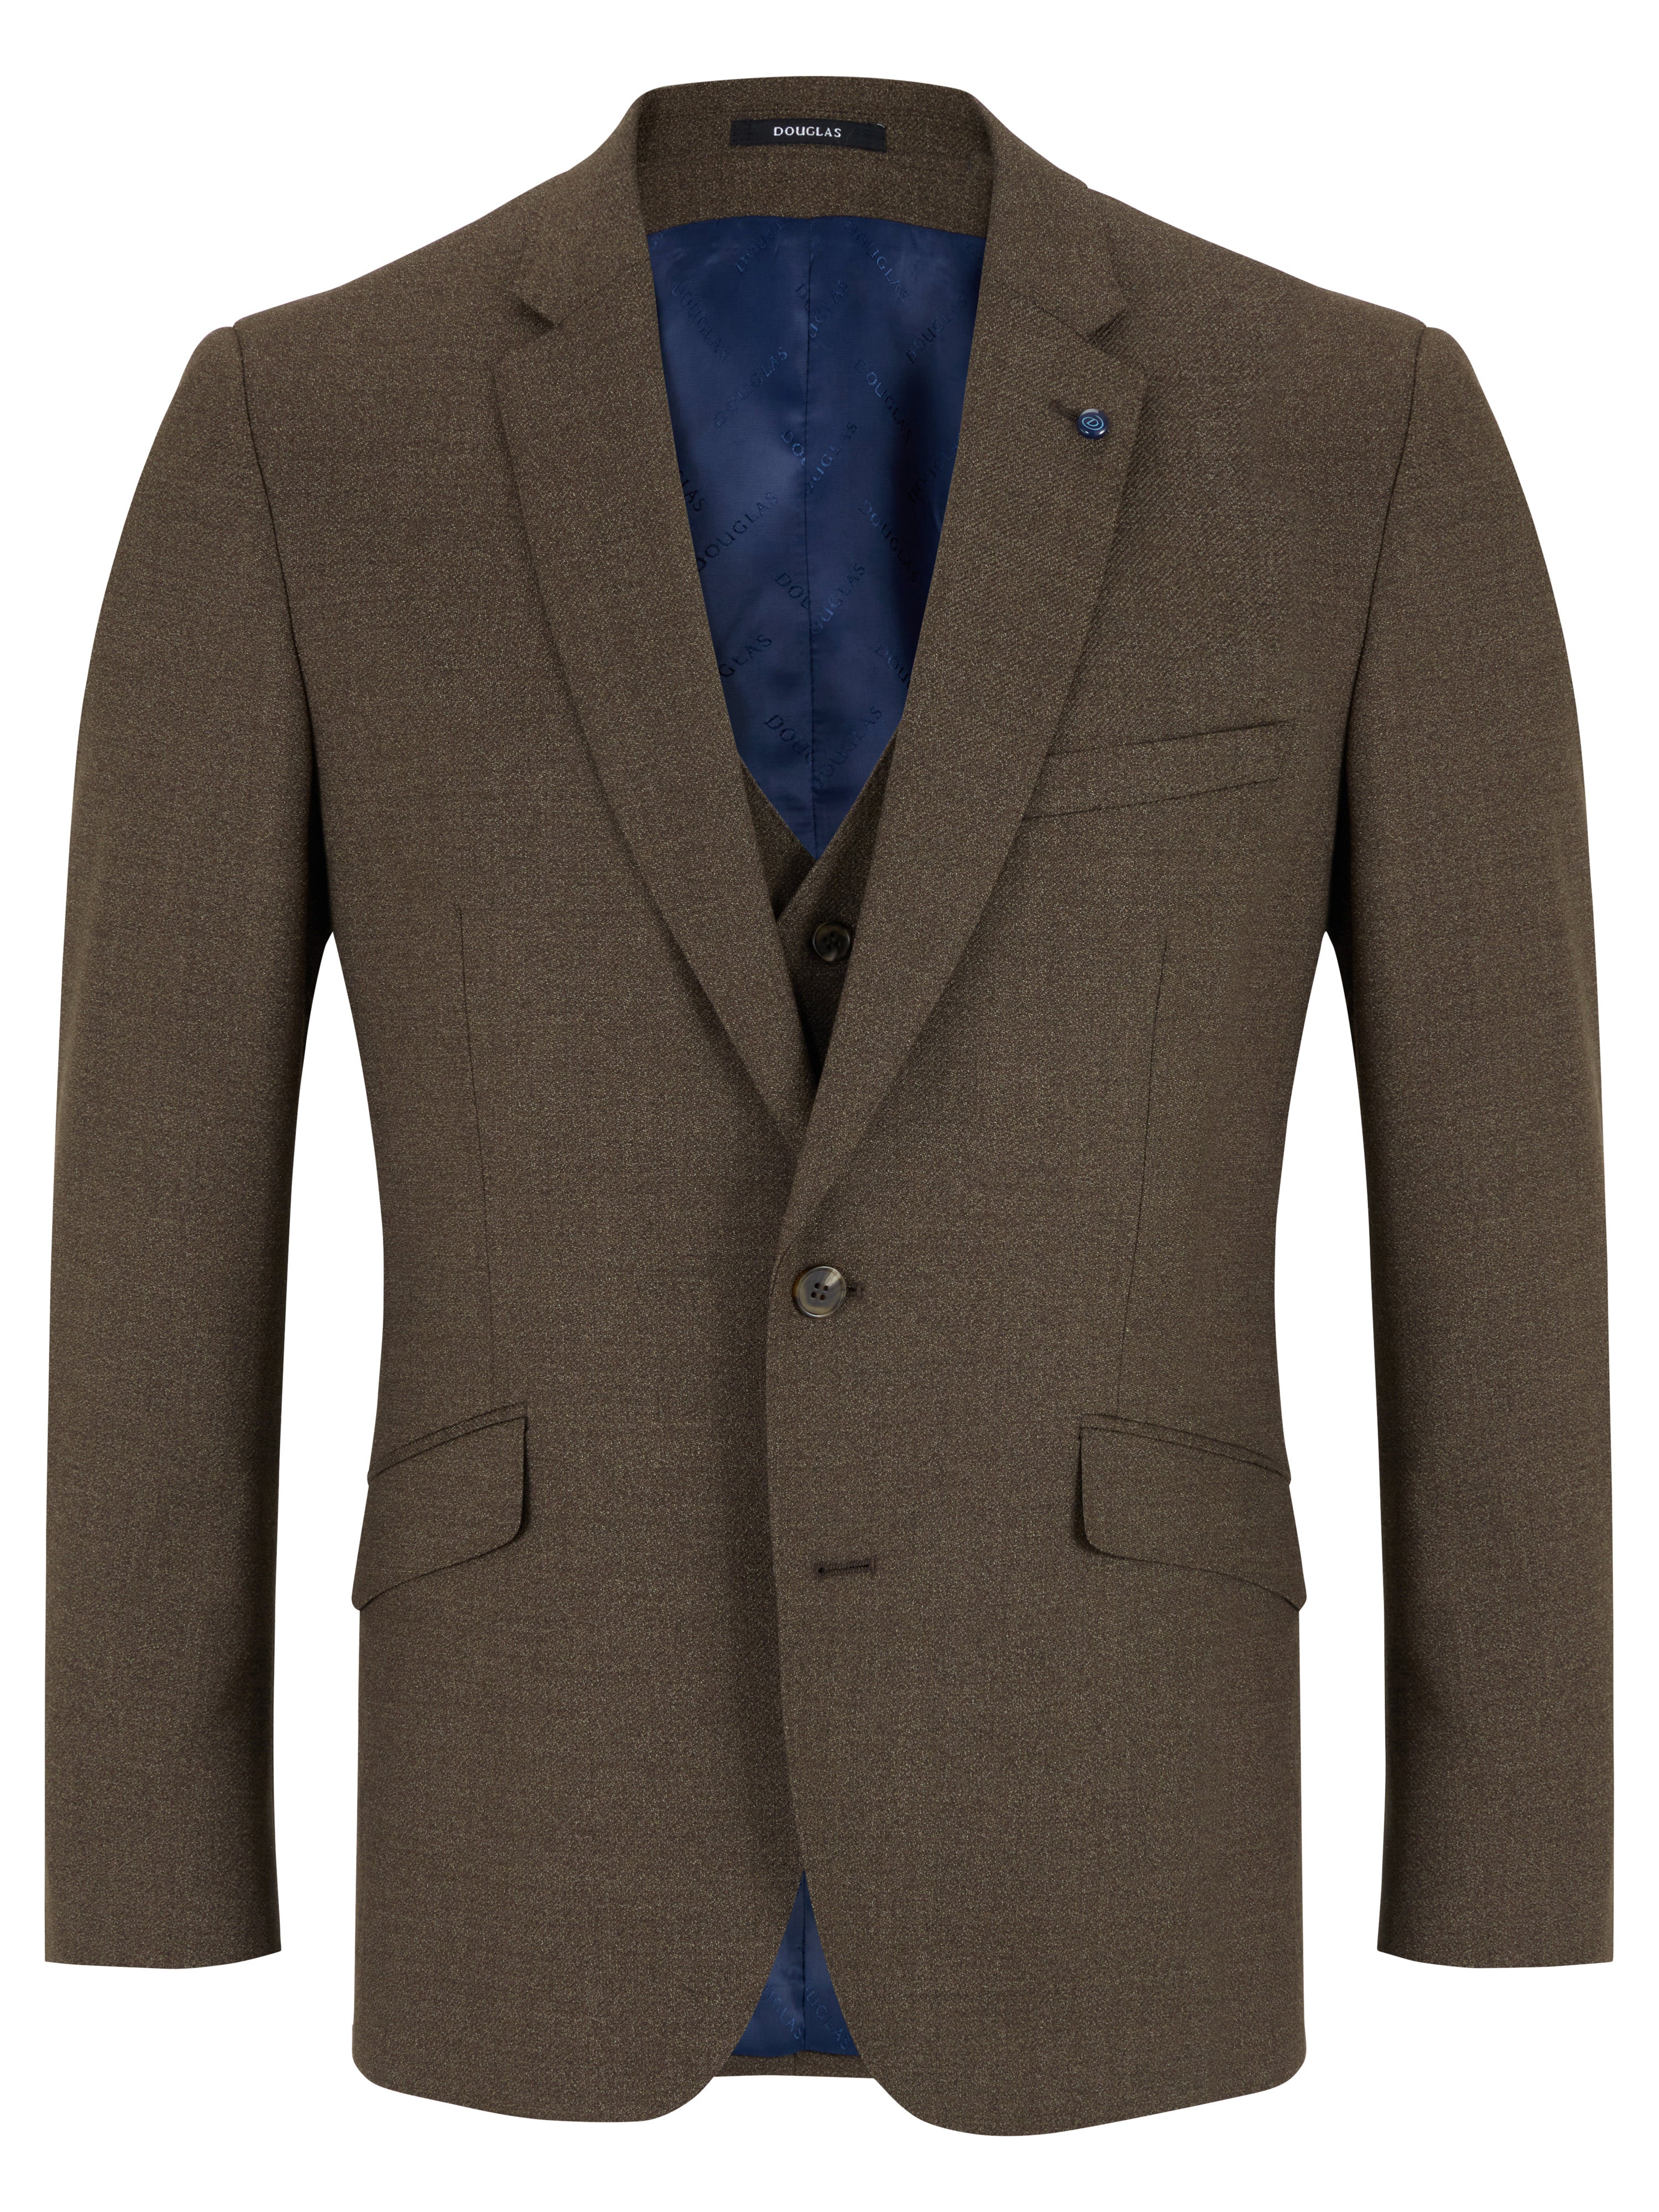 Douglas Brown Mix & Match Romelo Suit Jacket Short Length